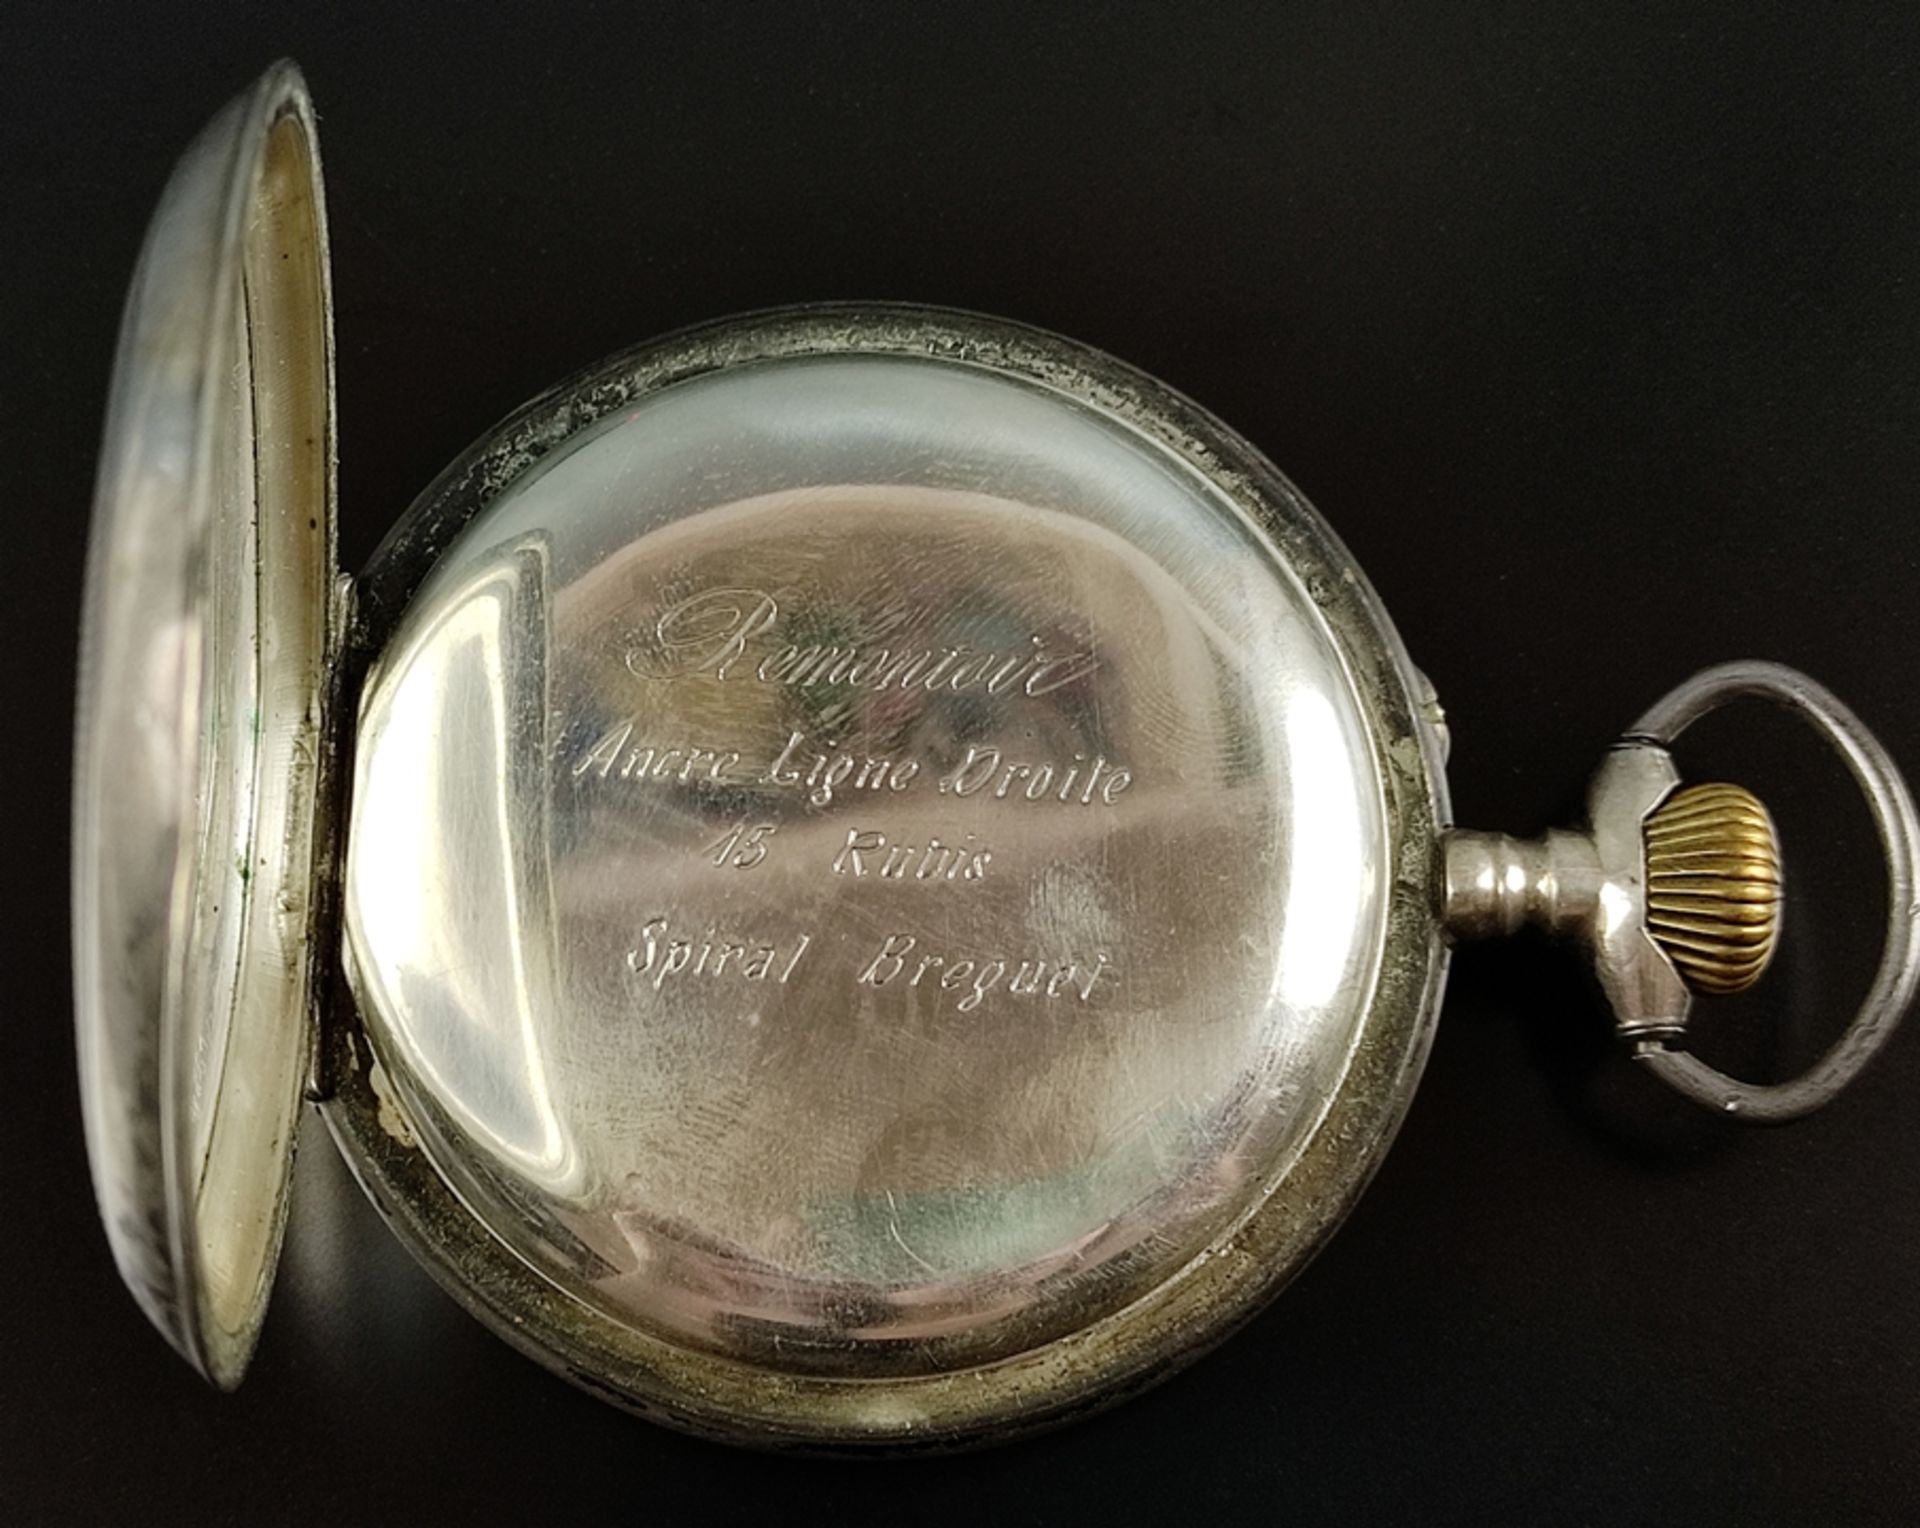 Große Taschenuhr/Eisenbahner-Uhr, "Regulateur" mit kleiner Sekunde, Ziffernblatt mit römischen Ziff - Bild 4 aus 7